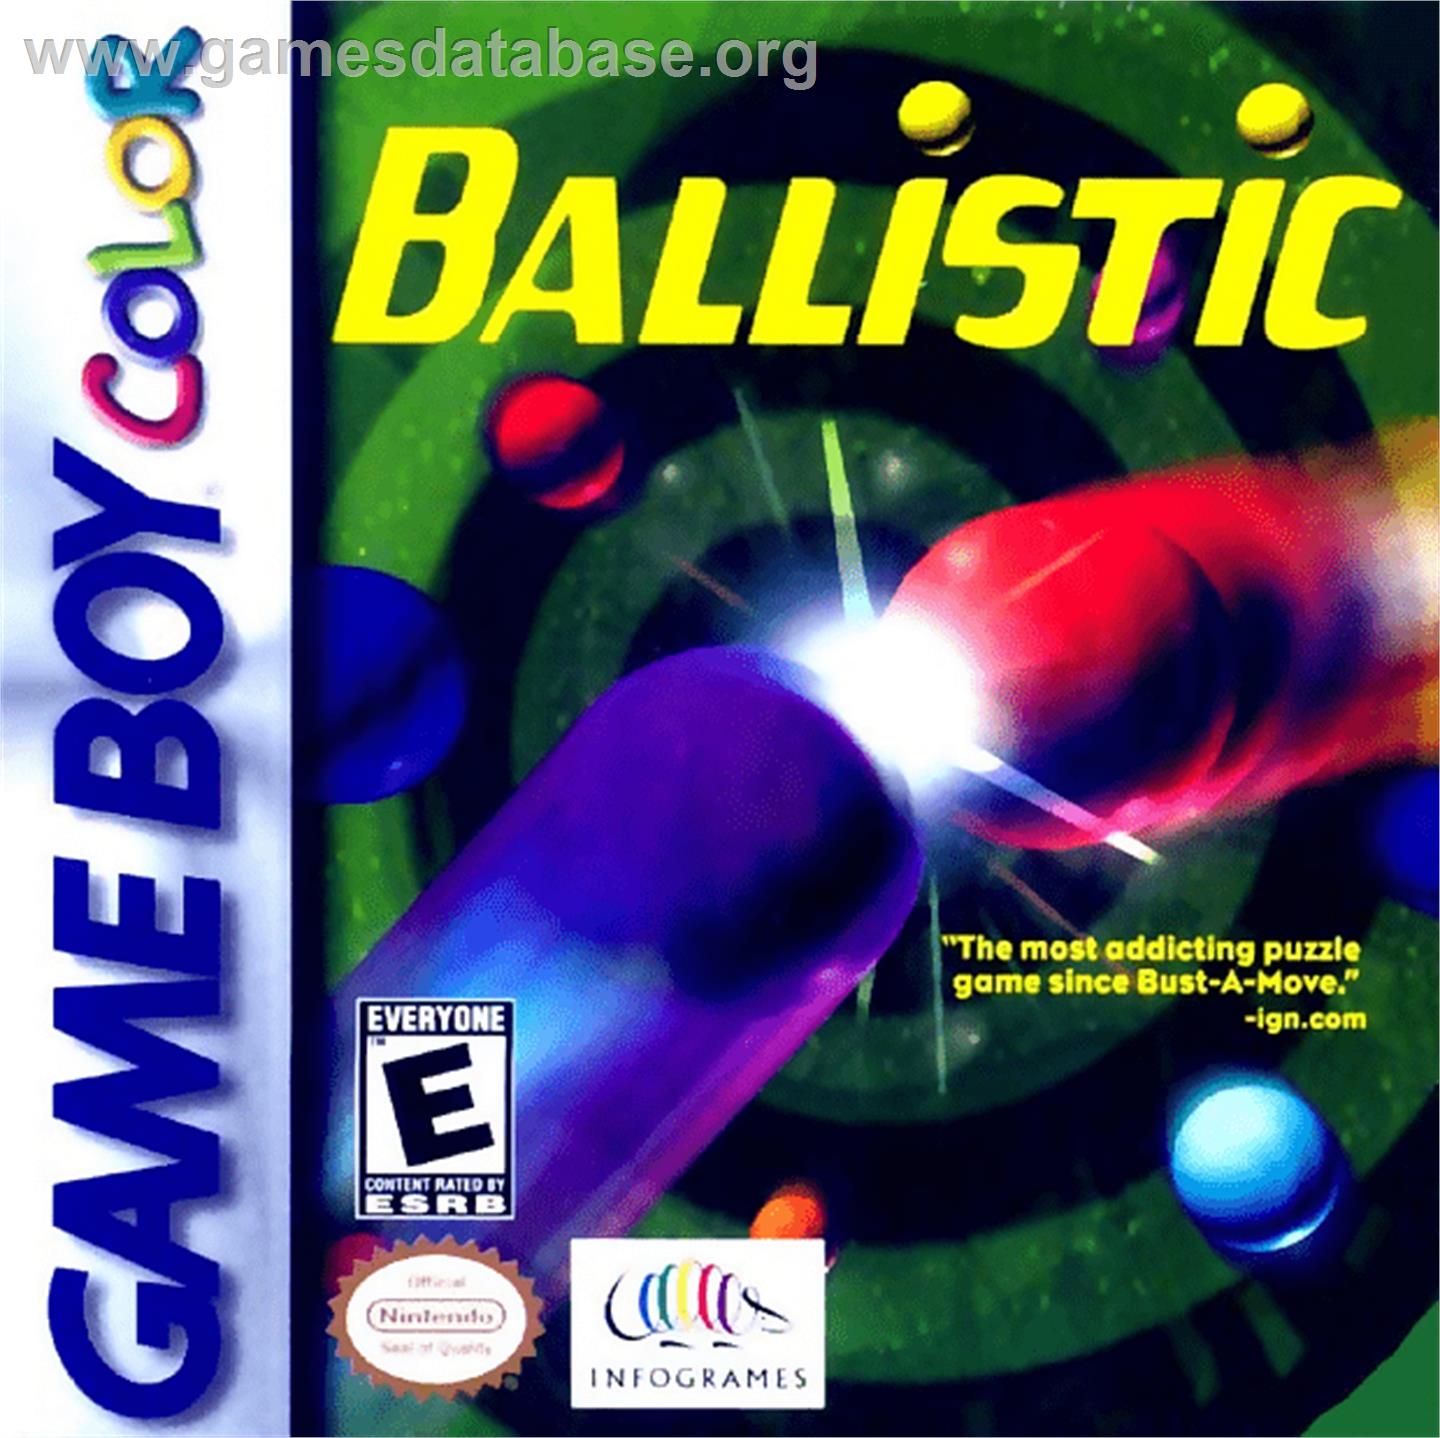 Ballistic - Nintendo Game Boy Color - Artwork - Box